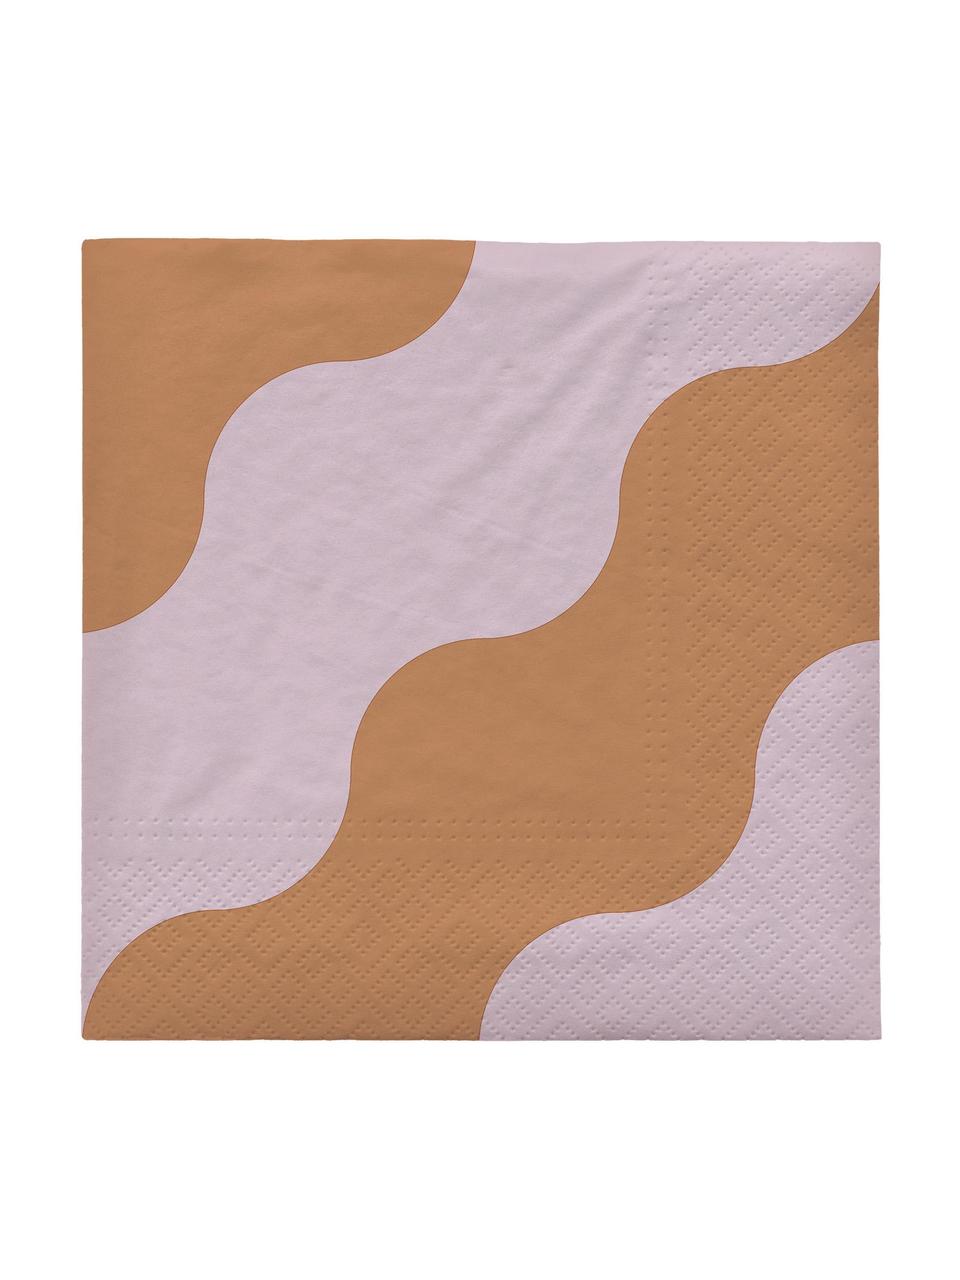 Servilletas de papel Tide, 20 uds., Papel, Naranja, lila, An 33 x L 33 cm